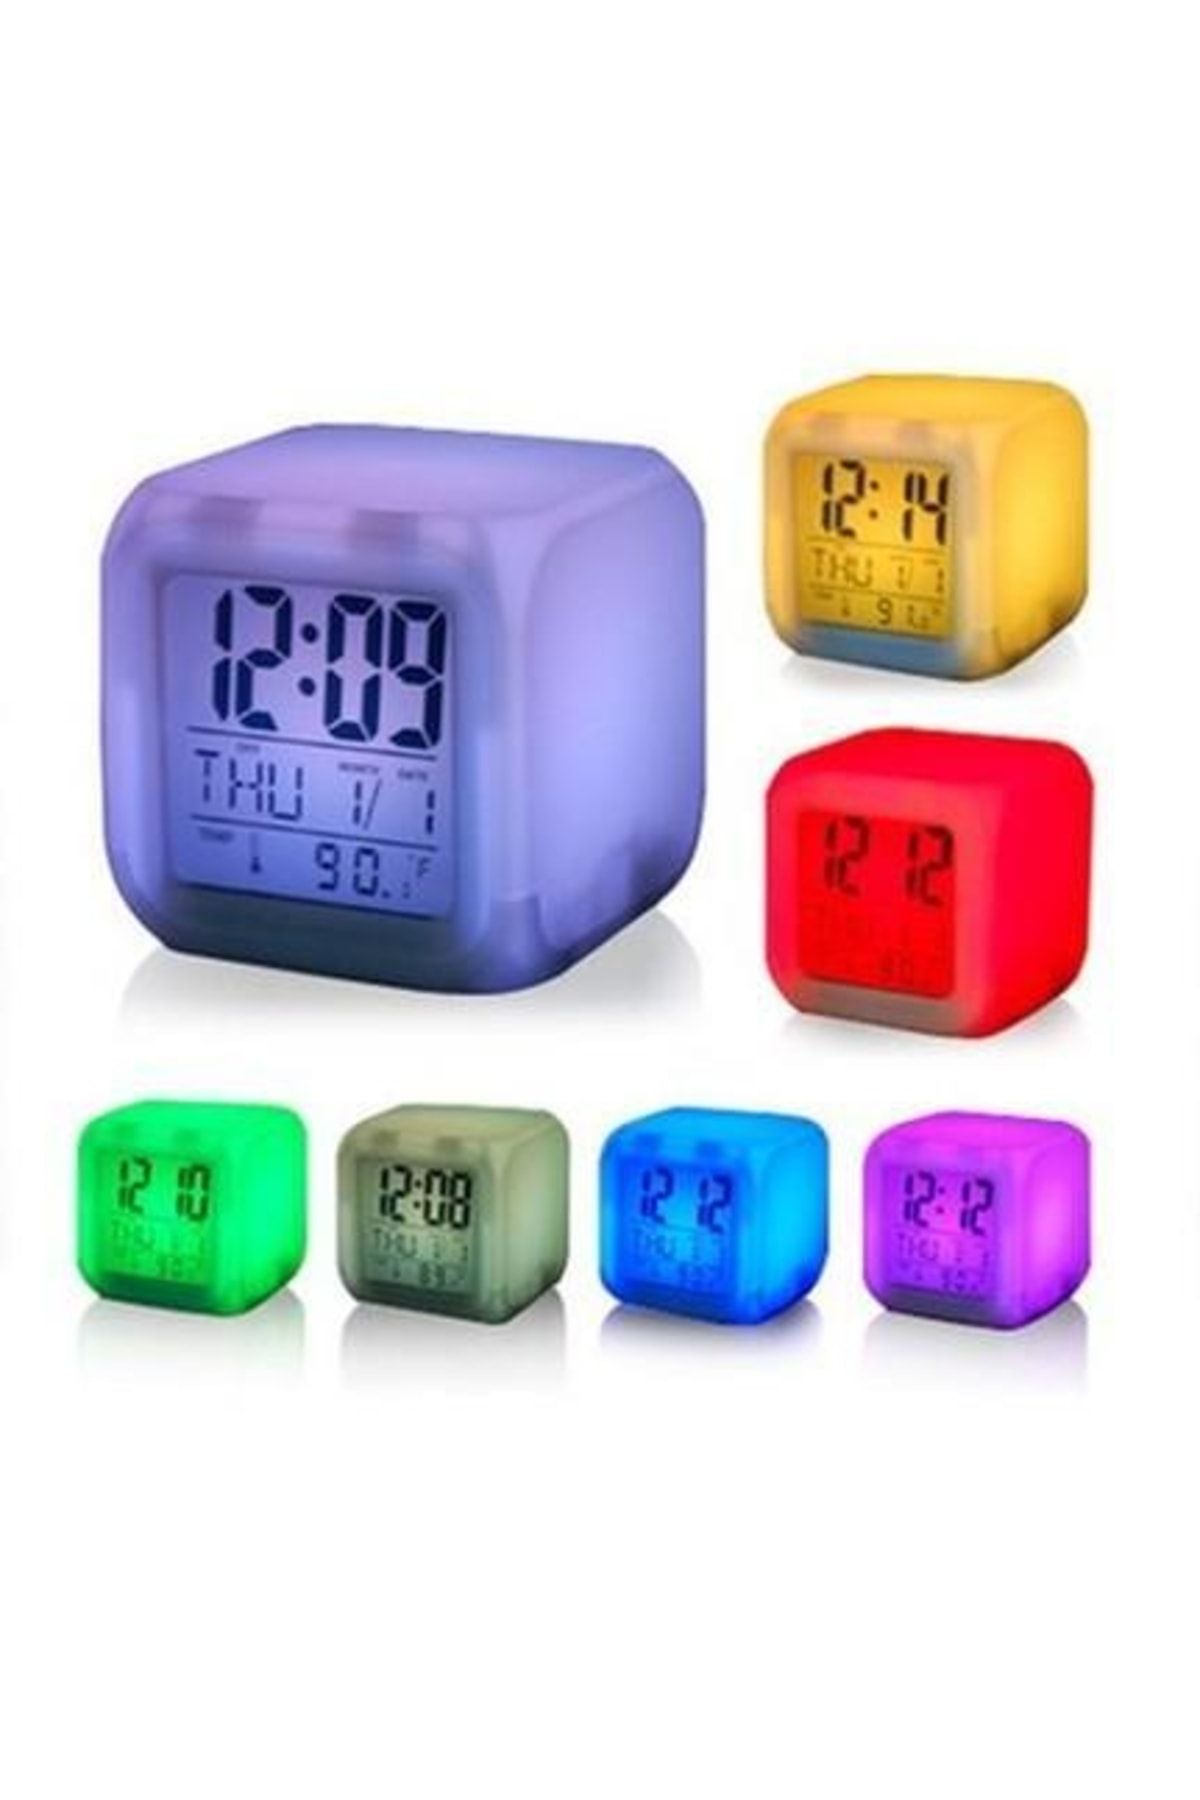 FırsatVar Dekoratif Alarmlı Dijital Küp Saat 7 Renk Değiştiren Alarmlı Dijital Küp Saat Hediyelik